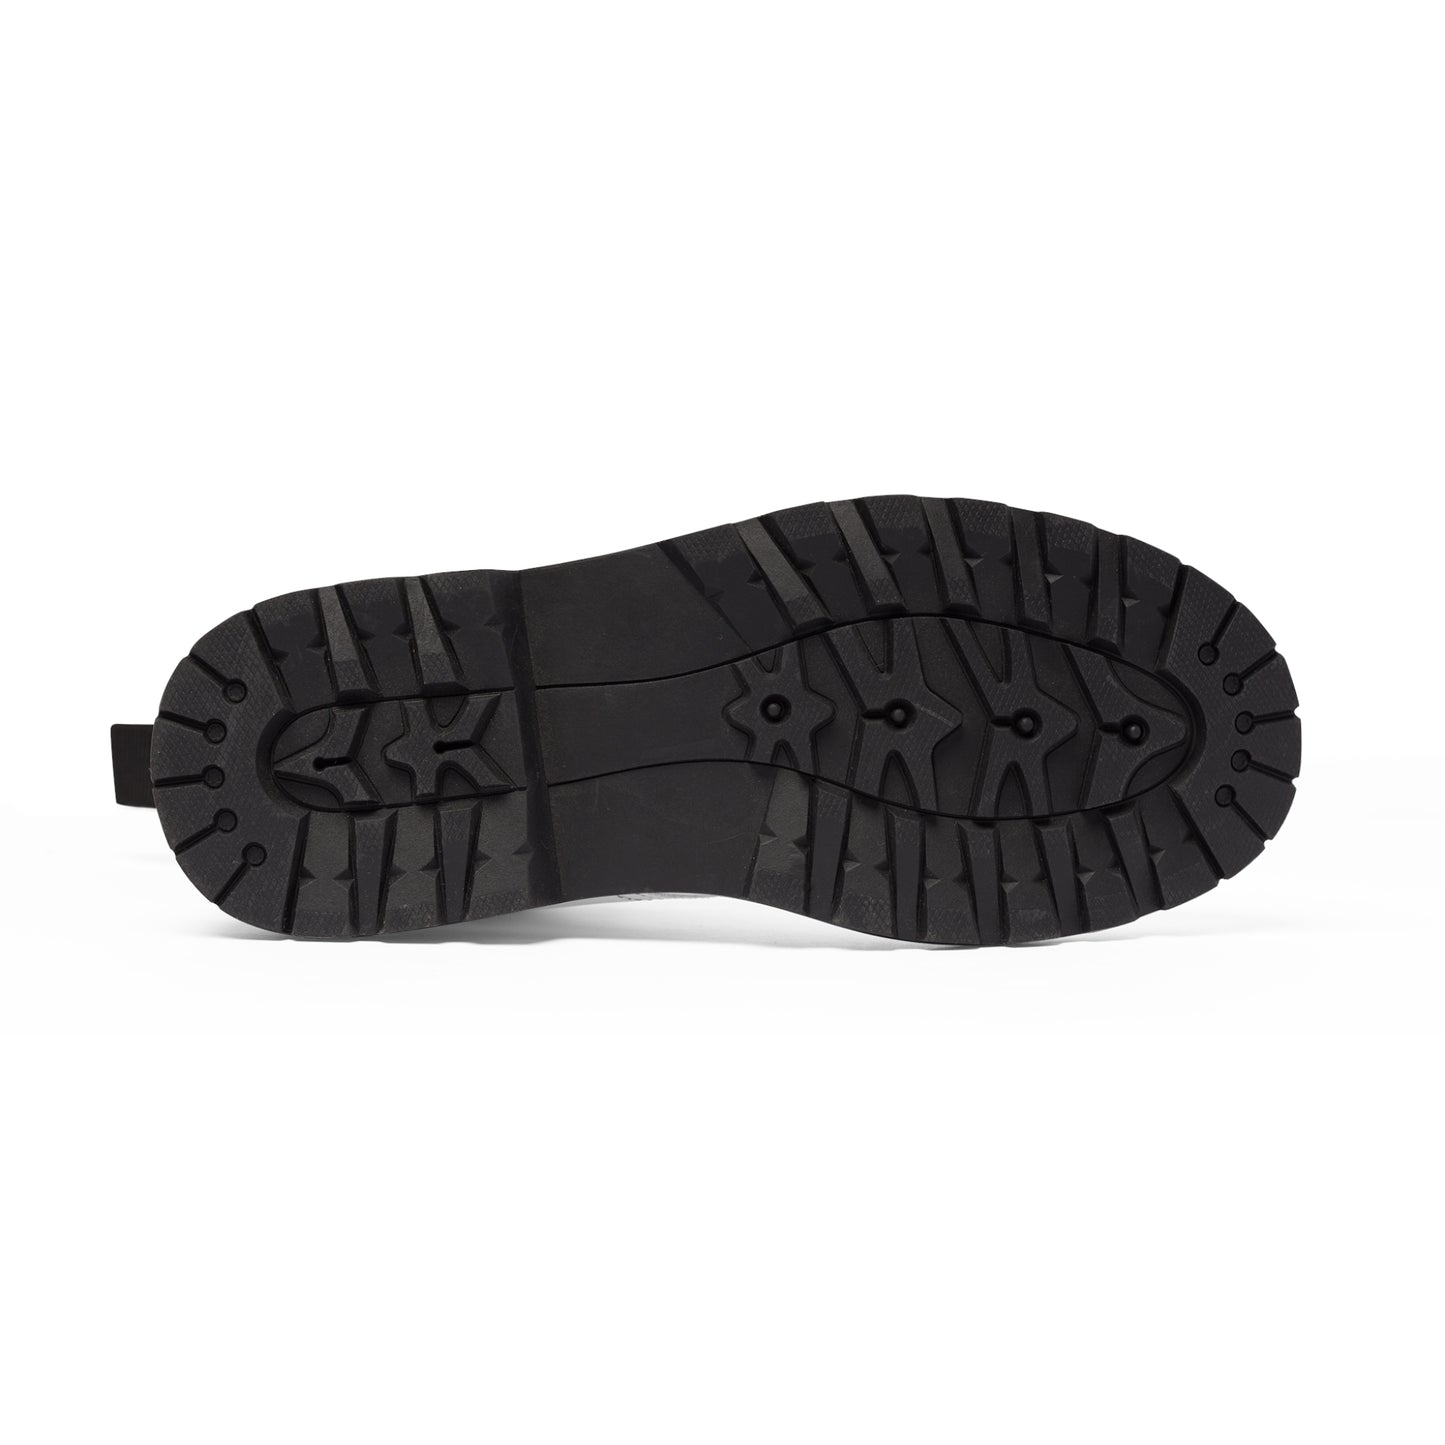 Men's Canvas Boots - 02866 US 10.5 Black sole